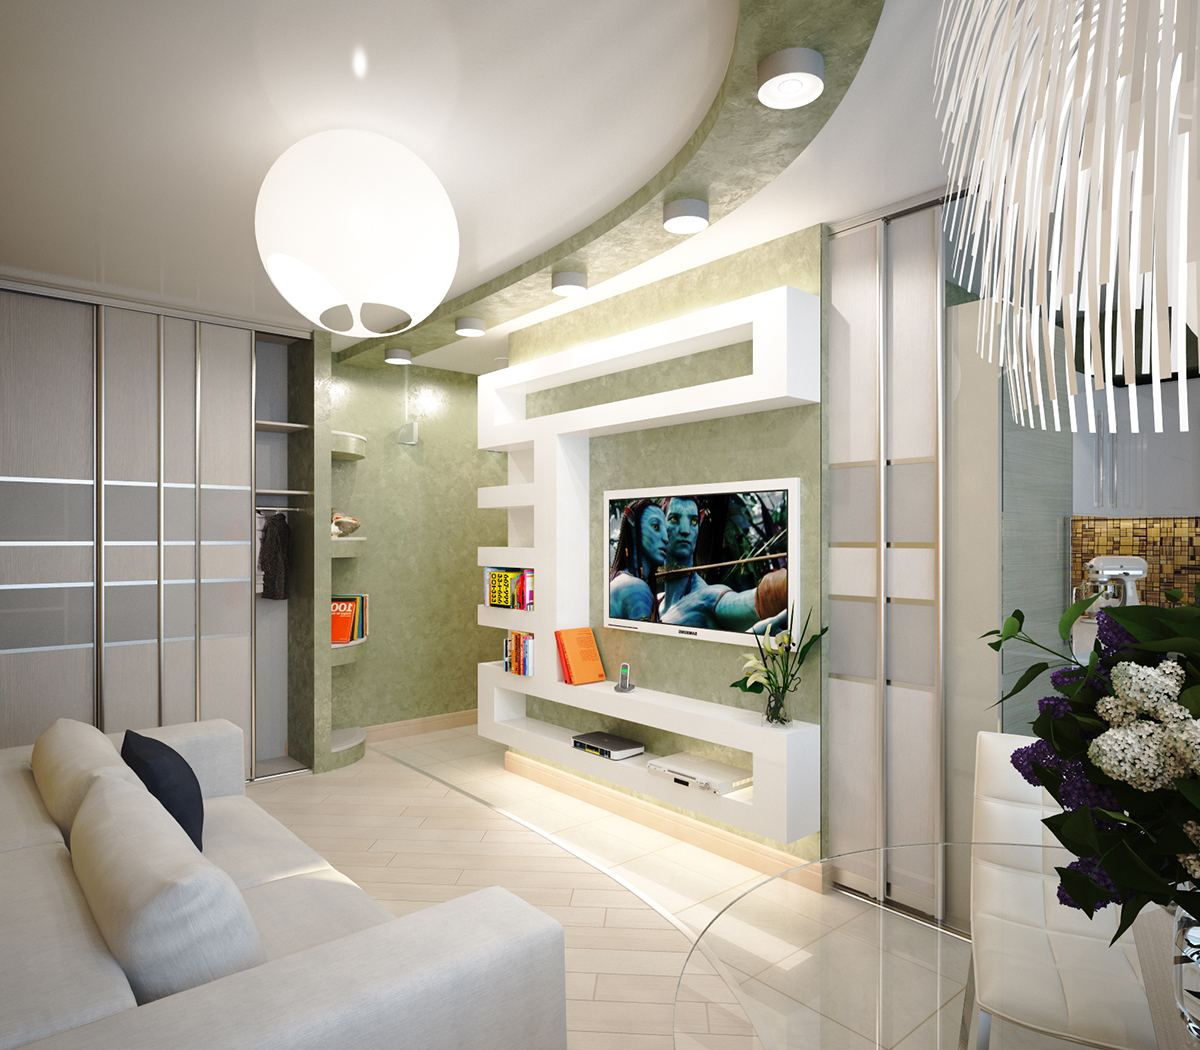 Разработка дизайна интерьера для квартиры на улице Таранченко: гостиная, фото 1